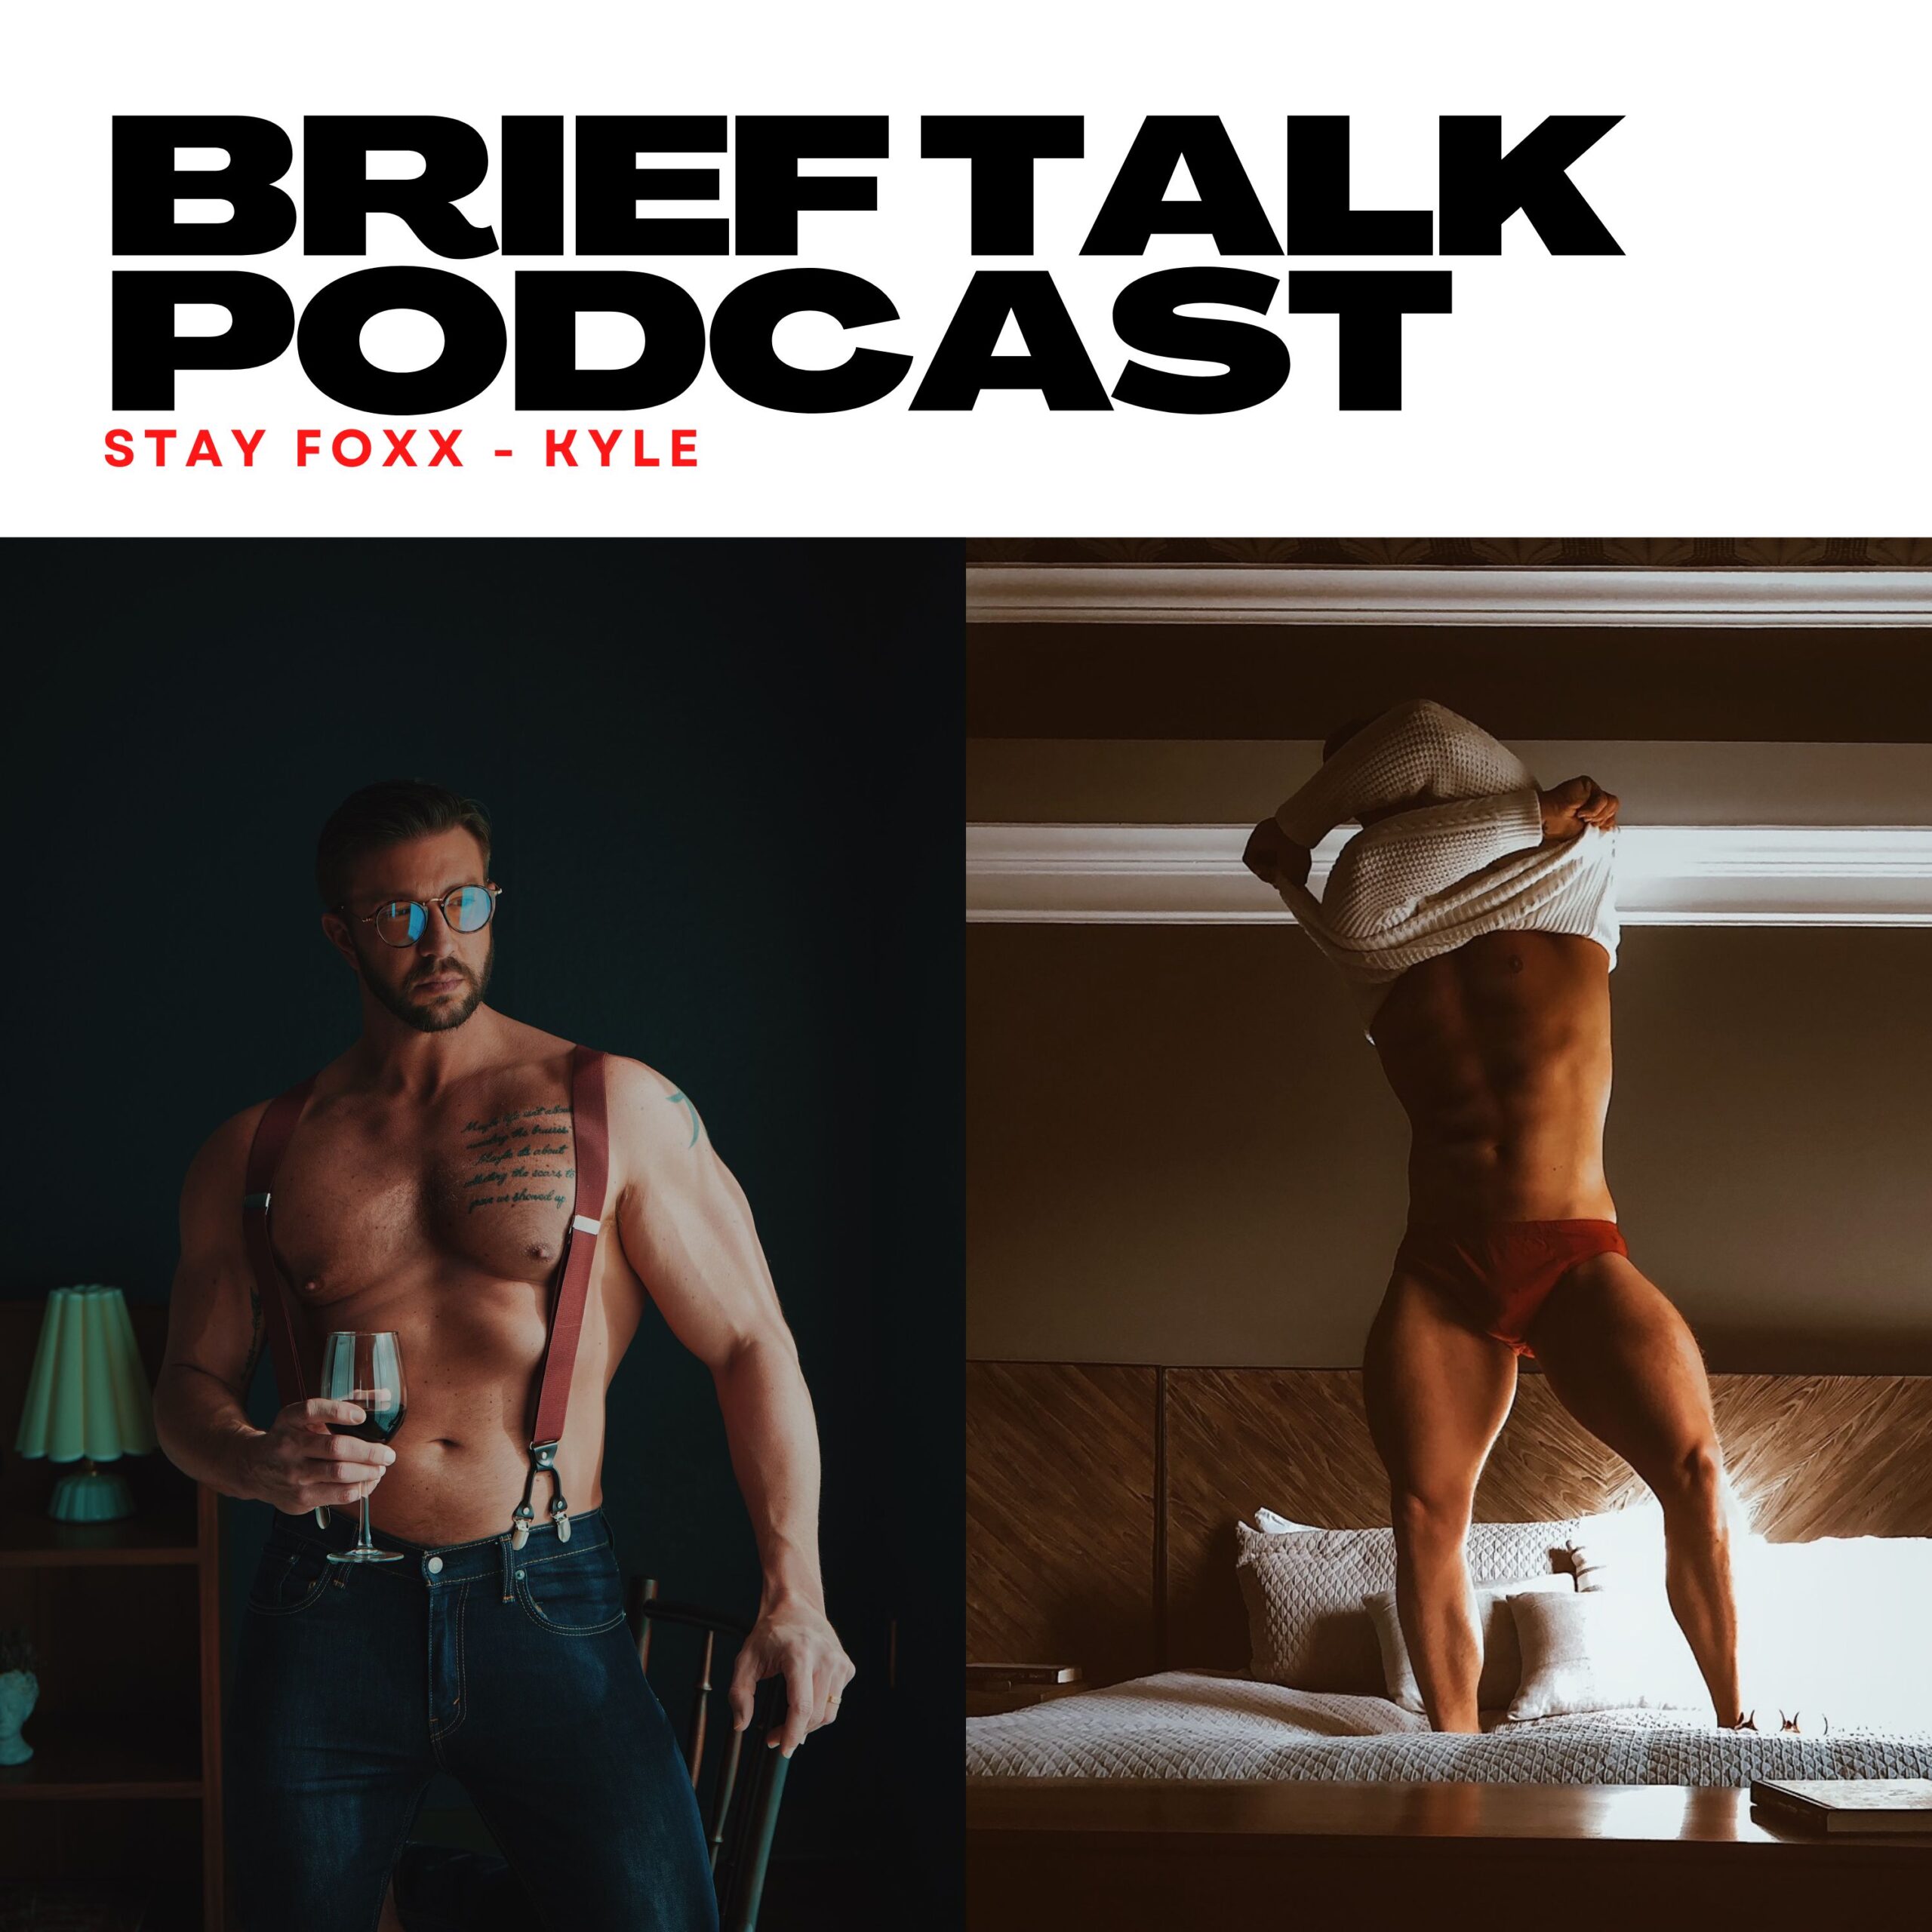 Brief Talk Podcast featuring StayFoxx – Kyle